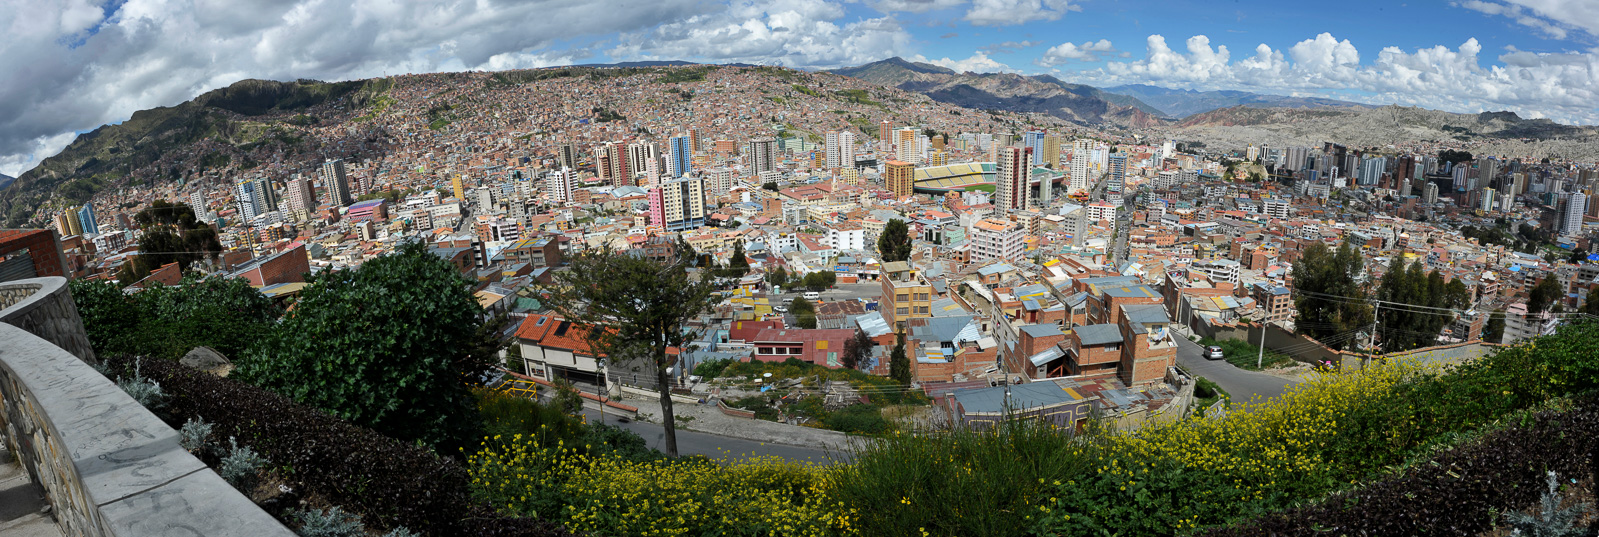 La Paz [28 mm, 1/160 sec at f / 16, ISO 200]